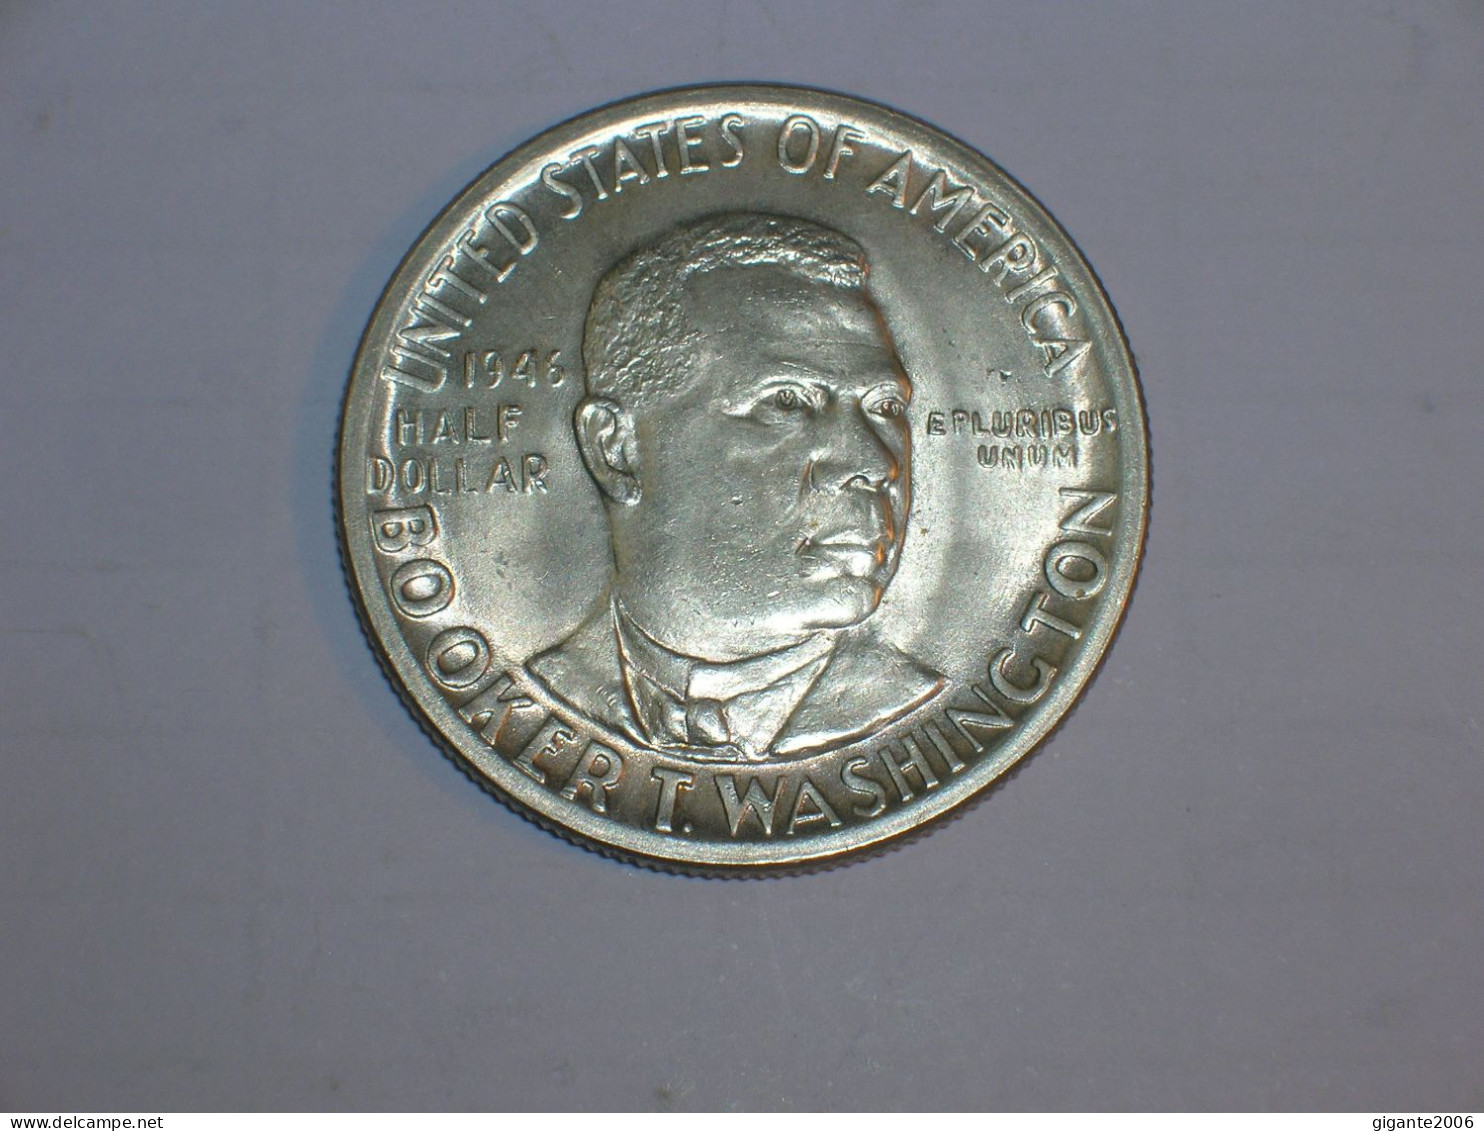 Estados Unidos/USA 1/2 Dolar Conmemorativo, 1946, Booker Washinton Memorial (13972) - Gedenkmünzen